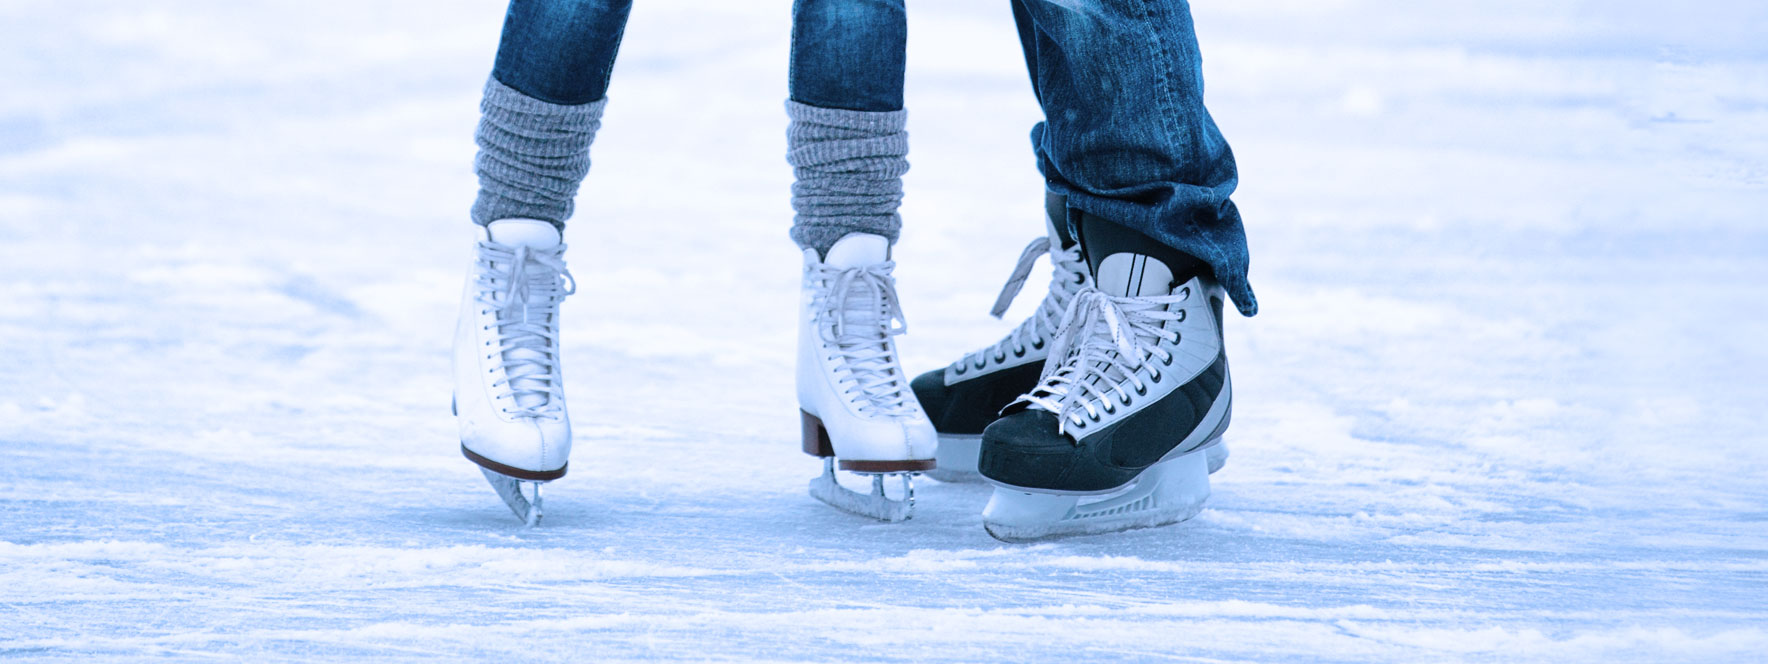 Le patinage de loisir sur glace